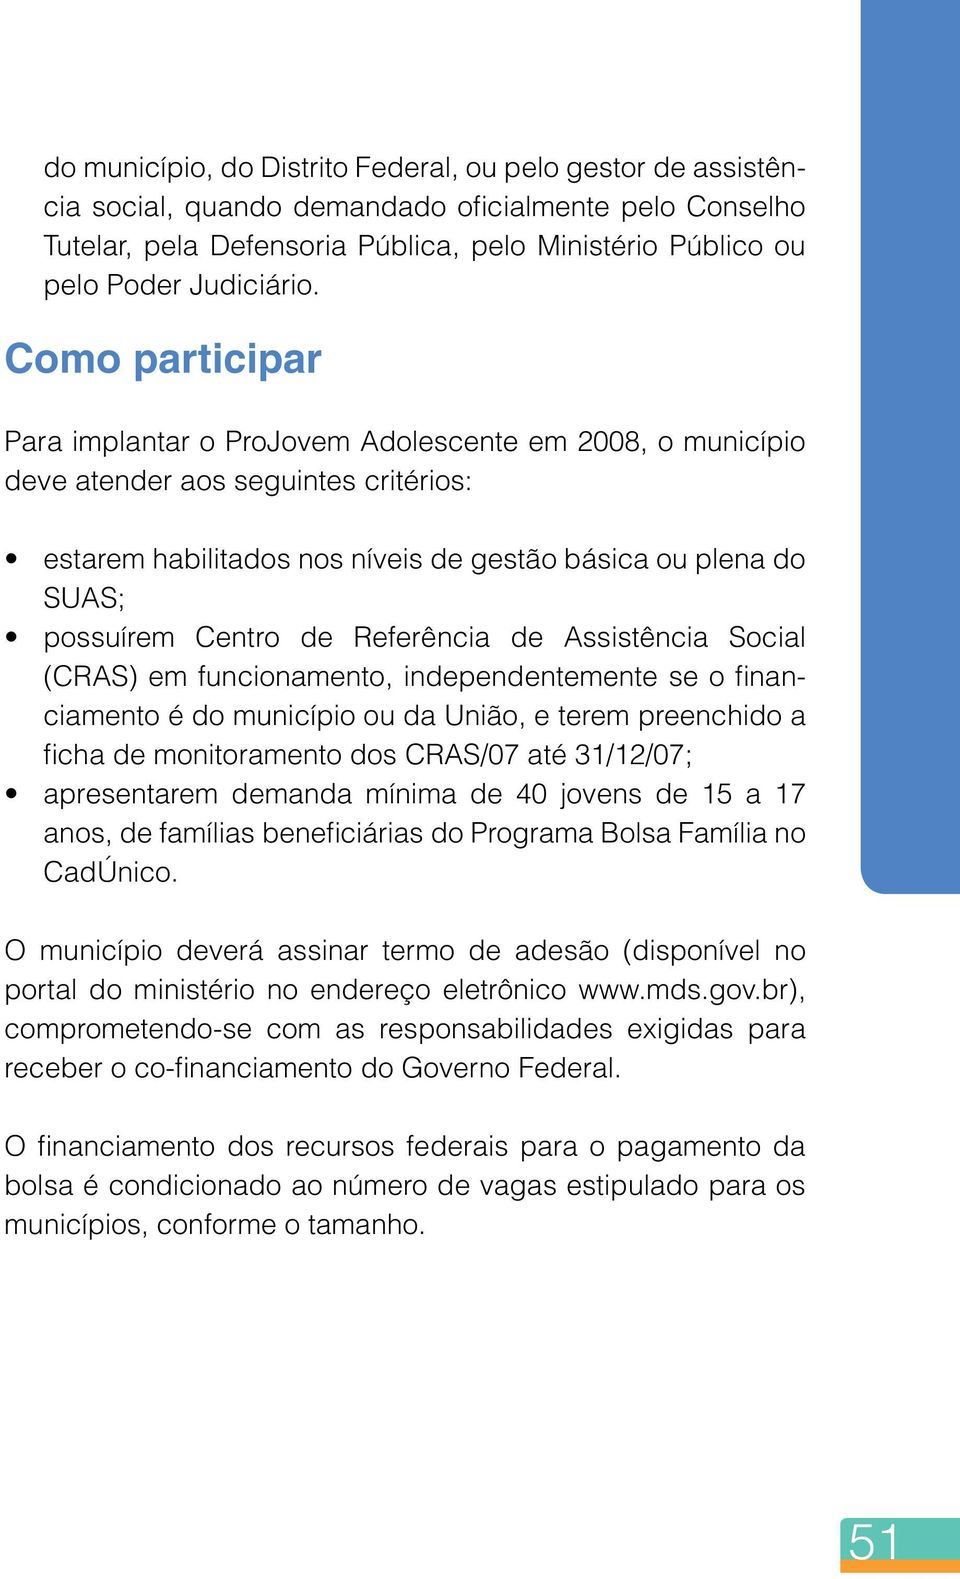 Referência de Assistência Social (CRAS) em funcionamento, independentemente se o financiamento é do município ou da União, e terem preenchido a ficha de monitoramento dos CRAS/07 até 31/12/07;